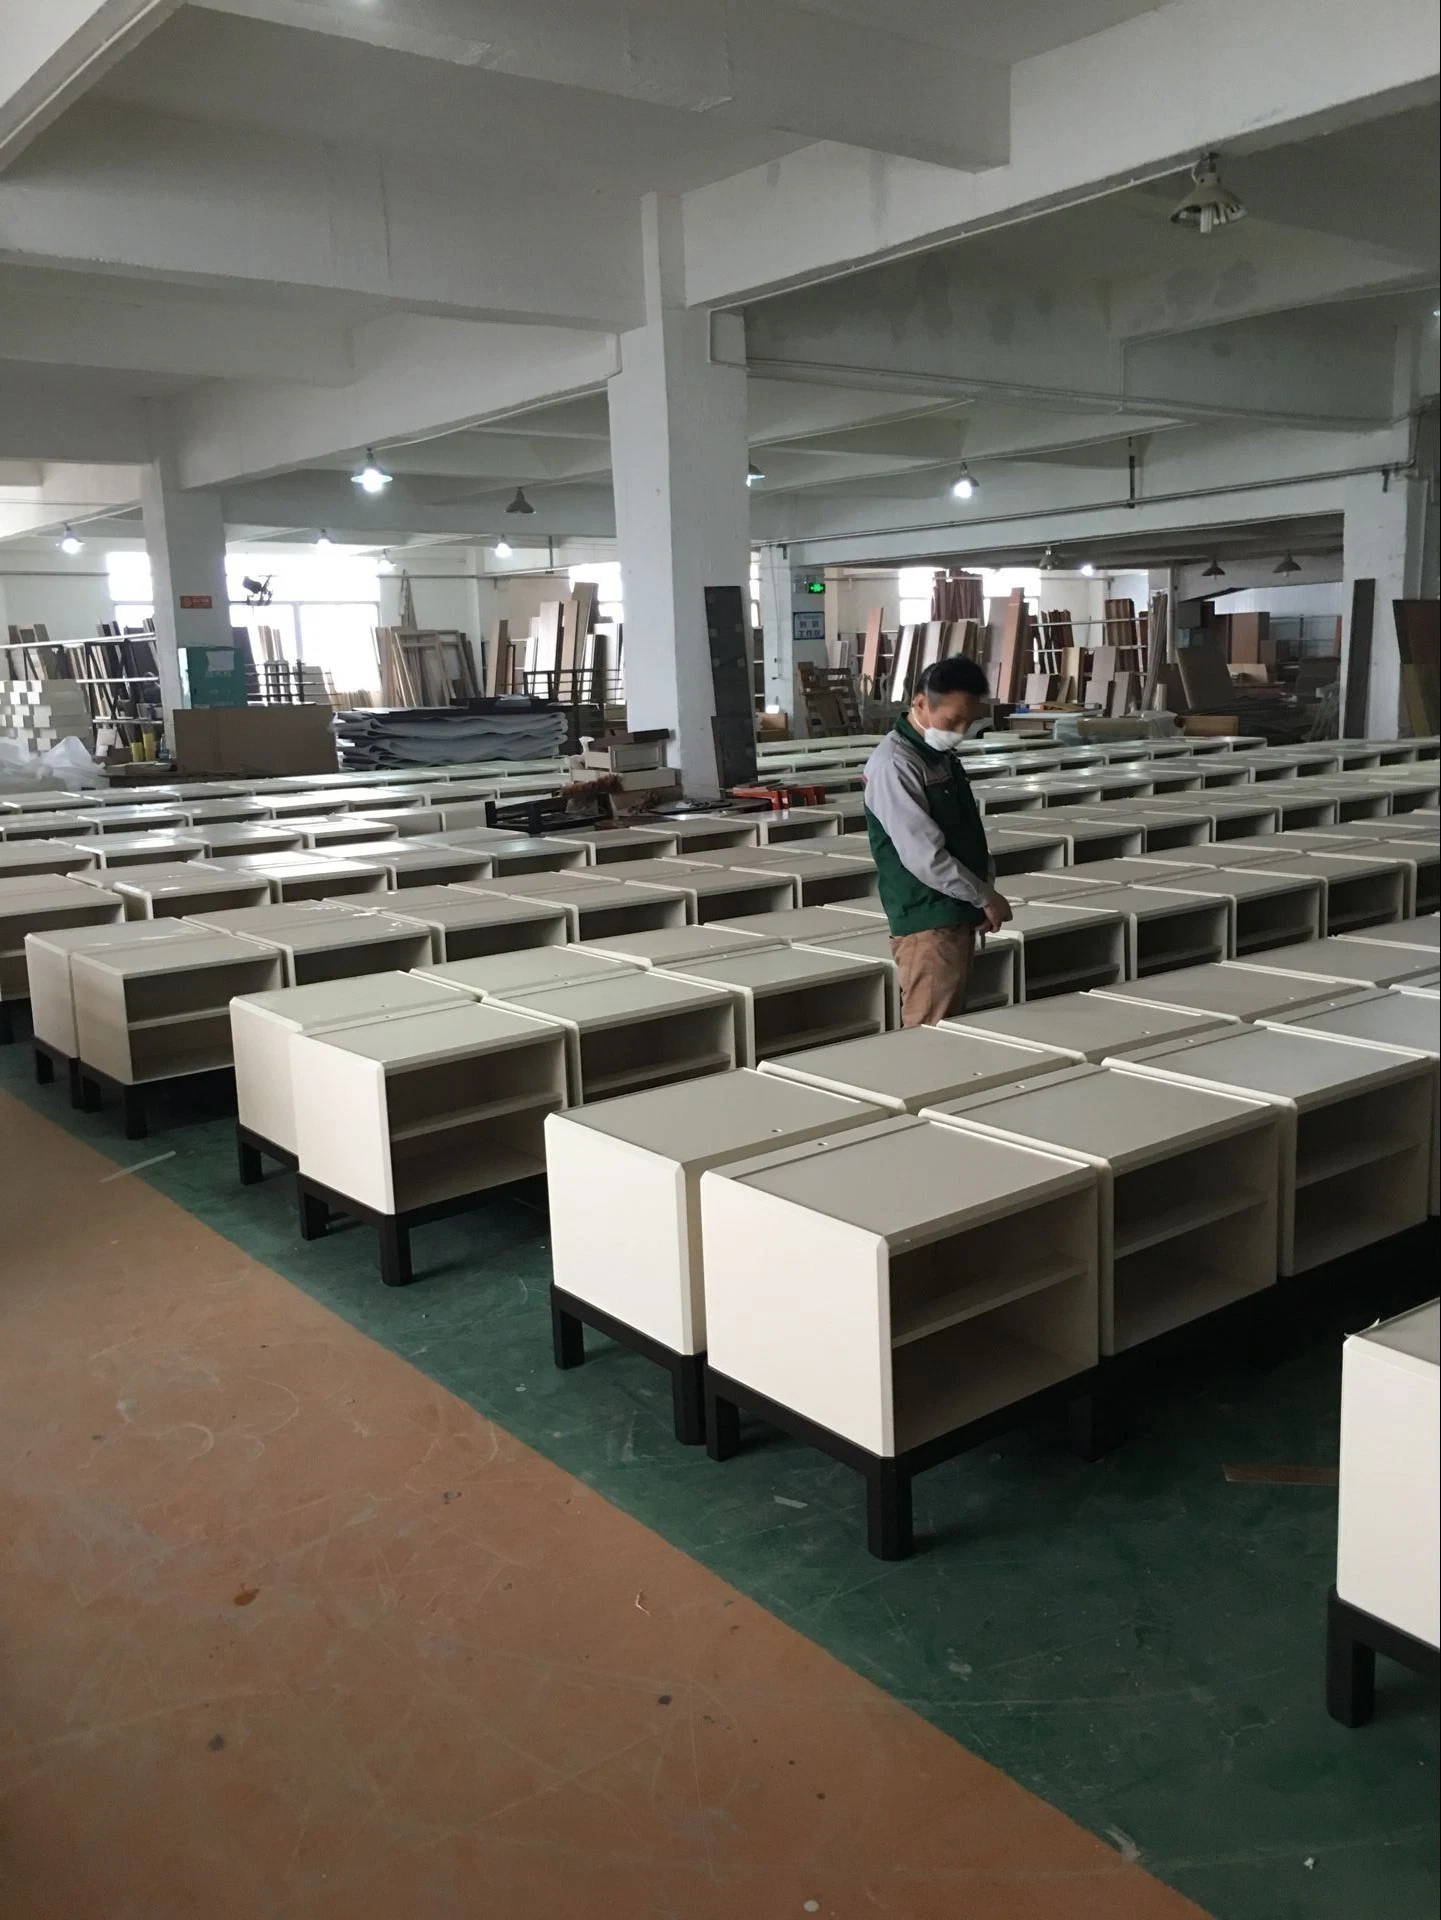 China Qualitätssicherung Neues Modell Furnier Laminat auf MDF Hotel Zimmer Mit Kingsize-Bett Und Möbeln